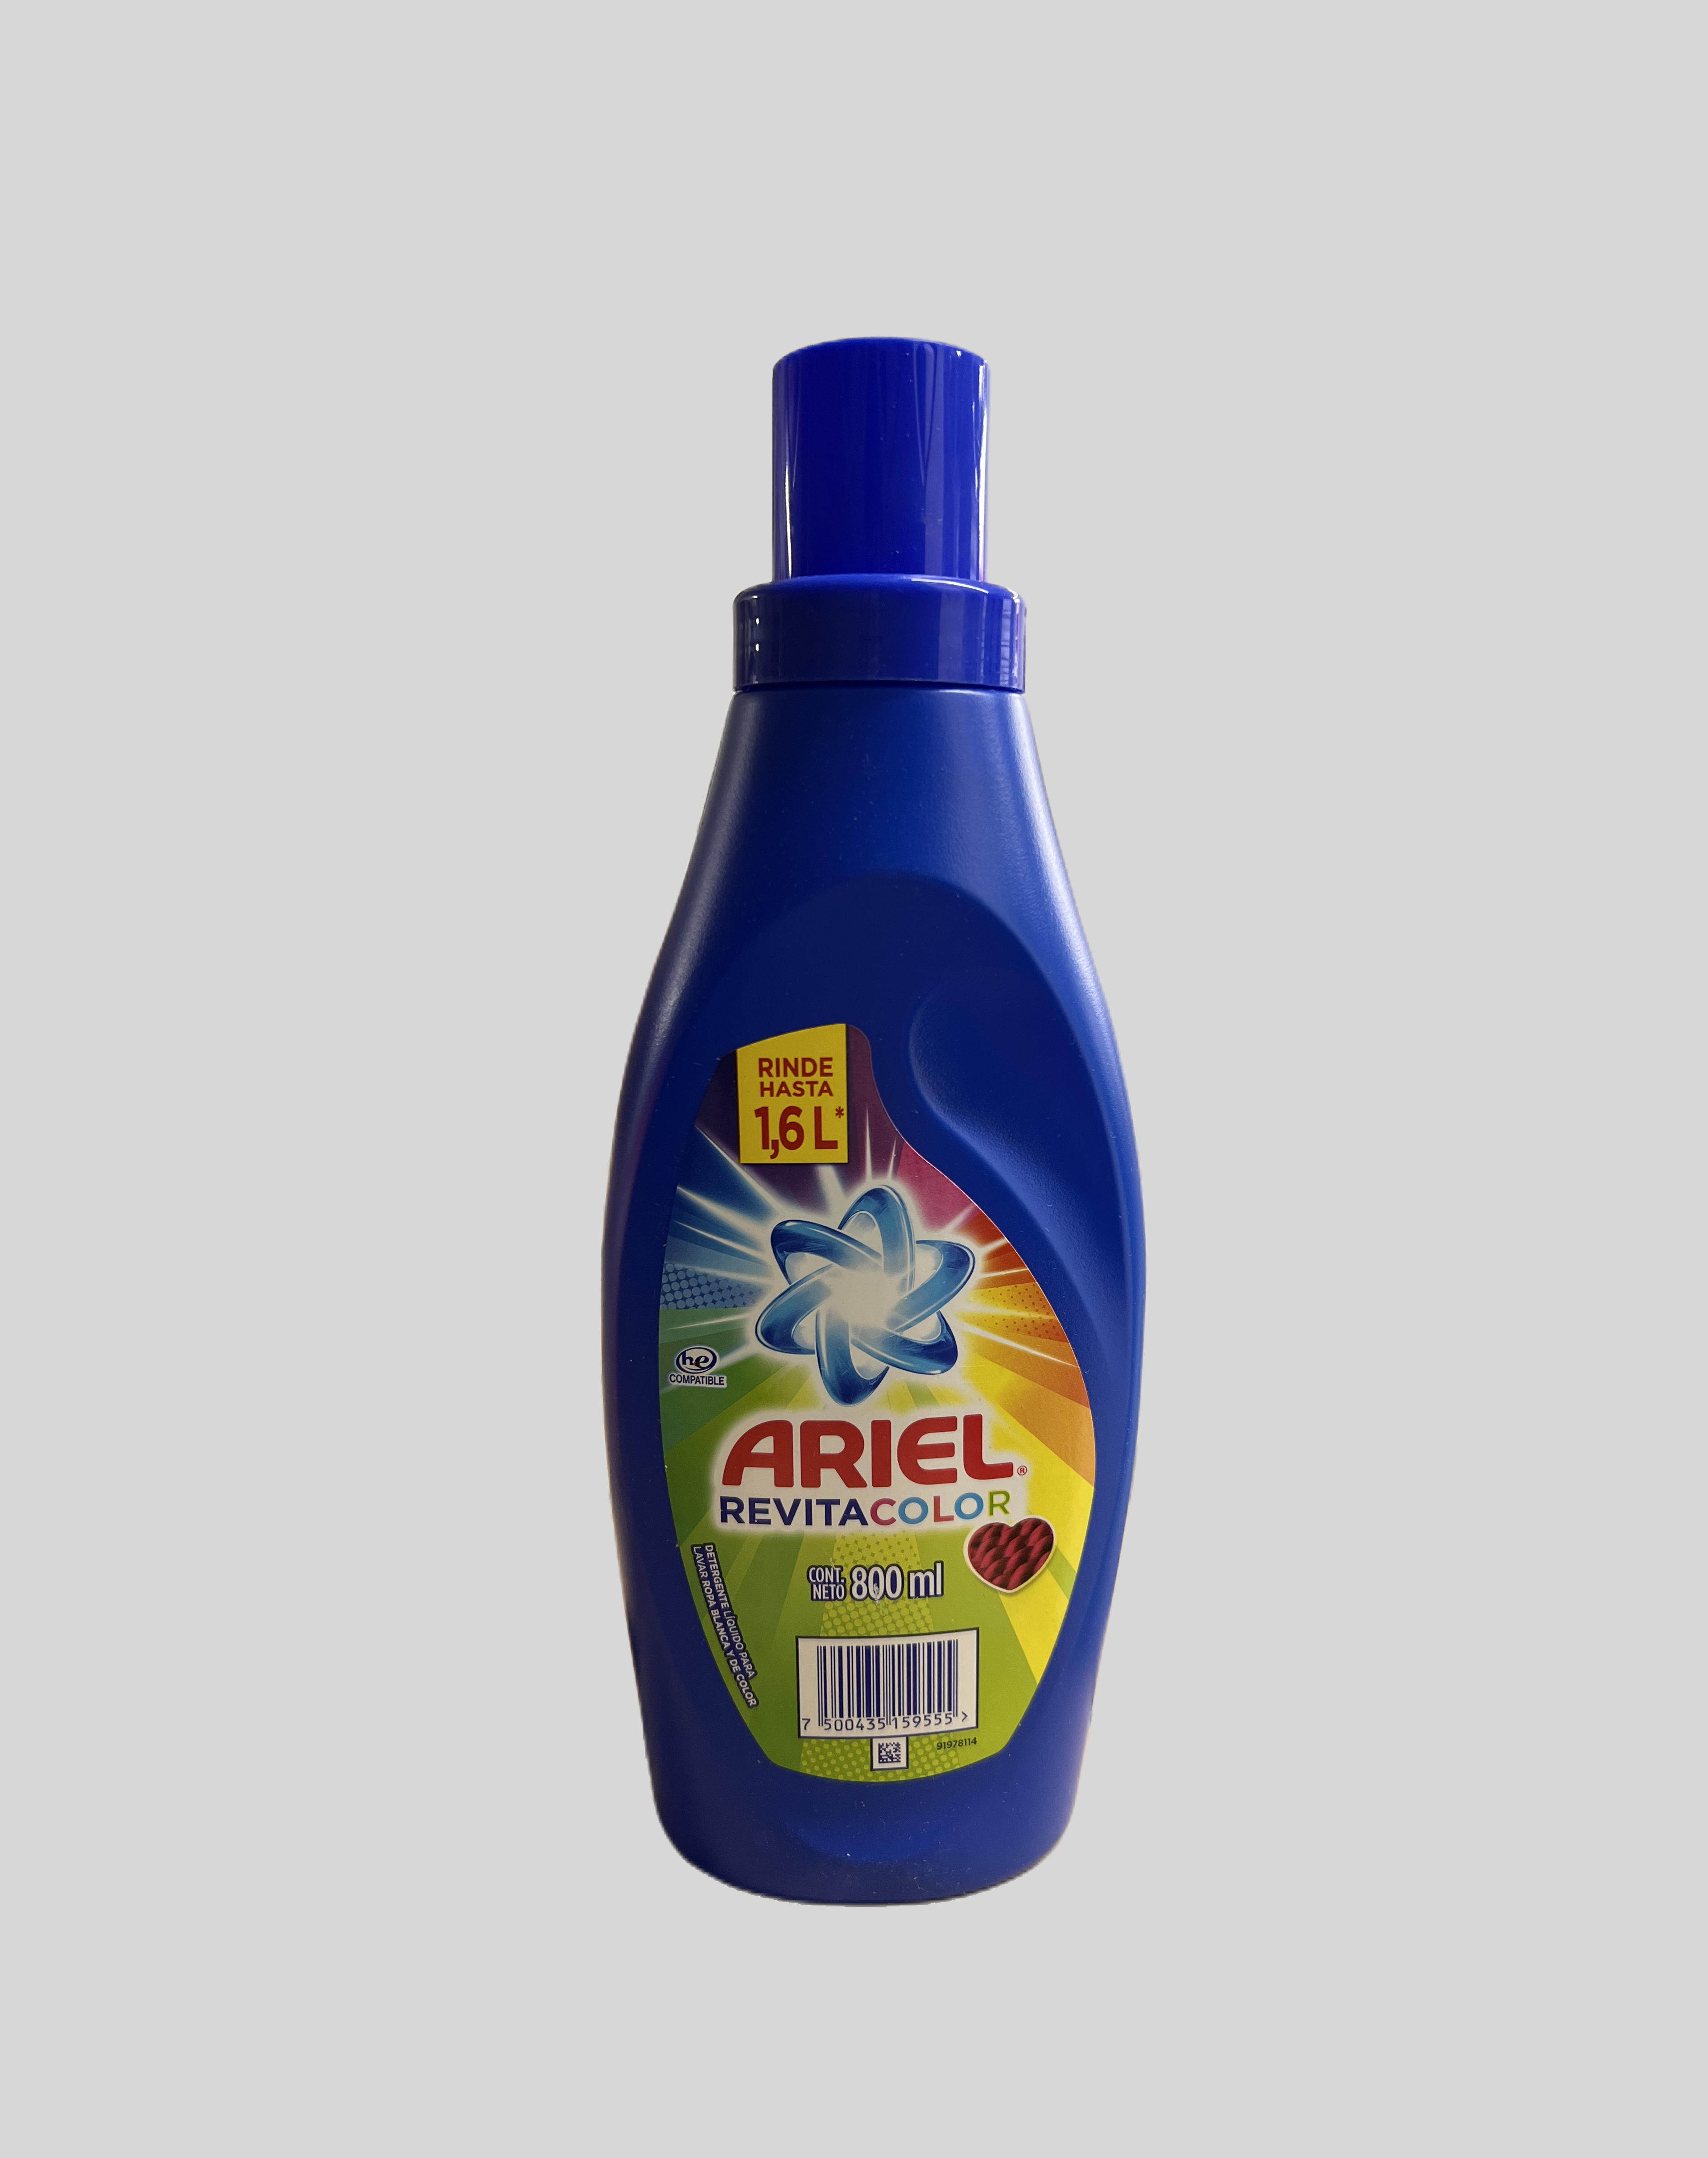 Ariel Revitacolor Detergente Líquido Concentrado Para Lavar Ropa Blanca y  de Color 800 ml - lagranbodega